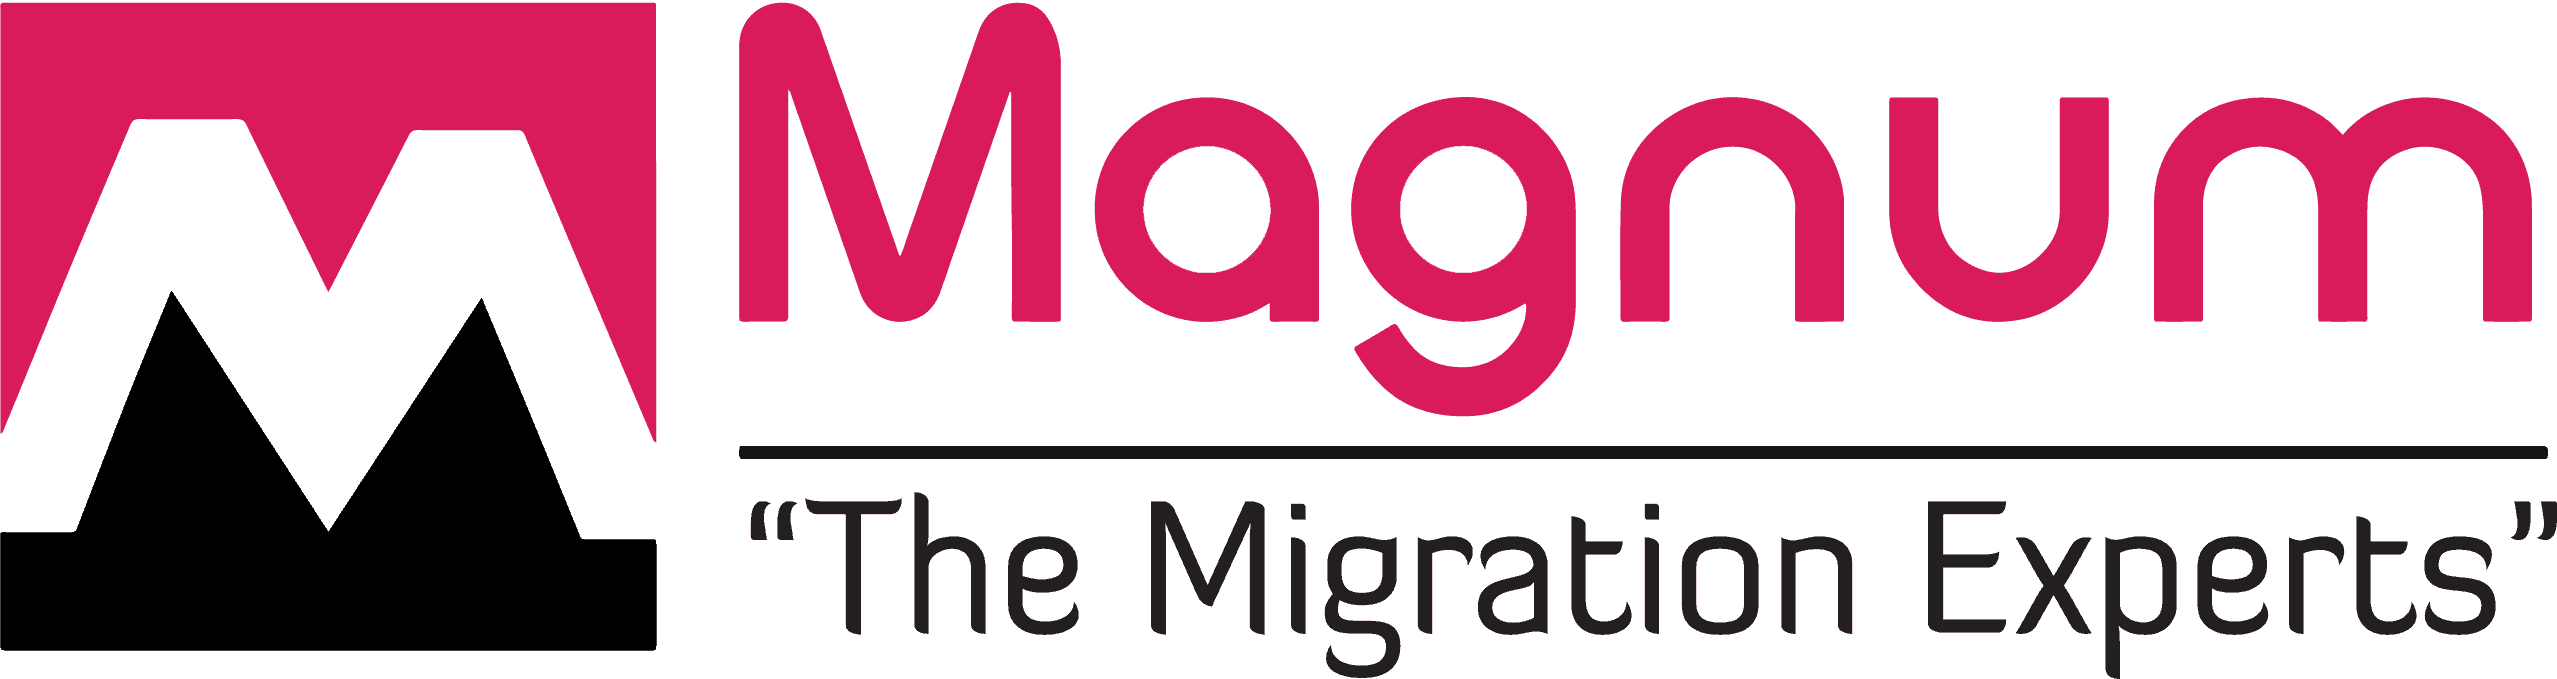 Magnum-Transactions-logo